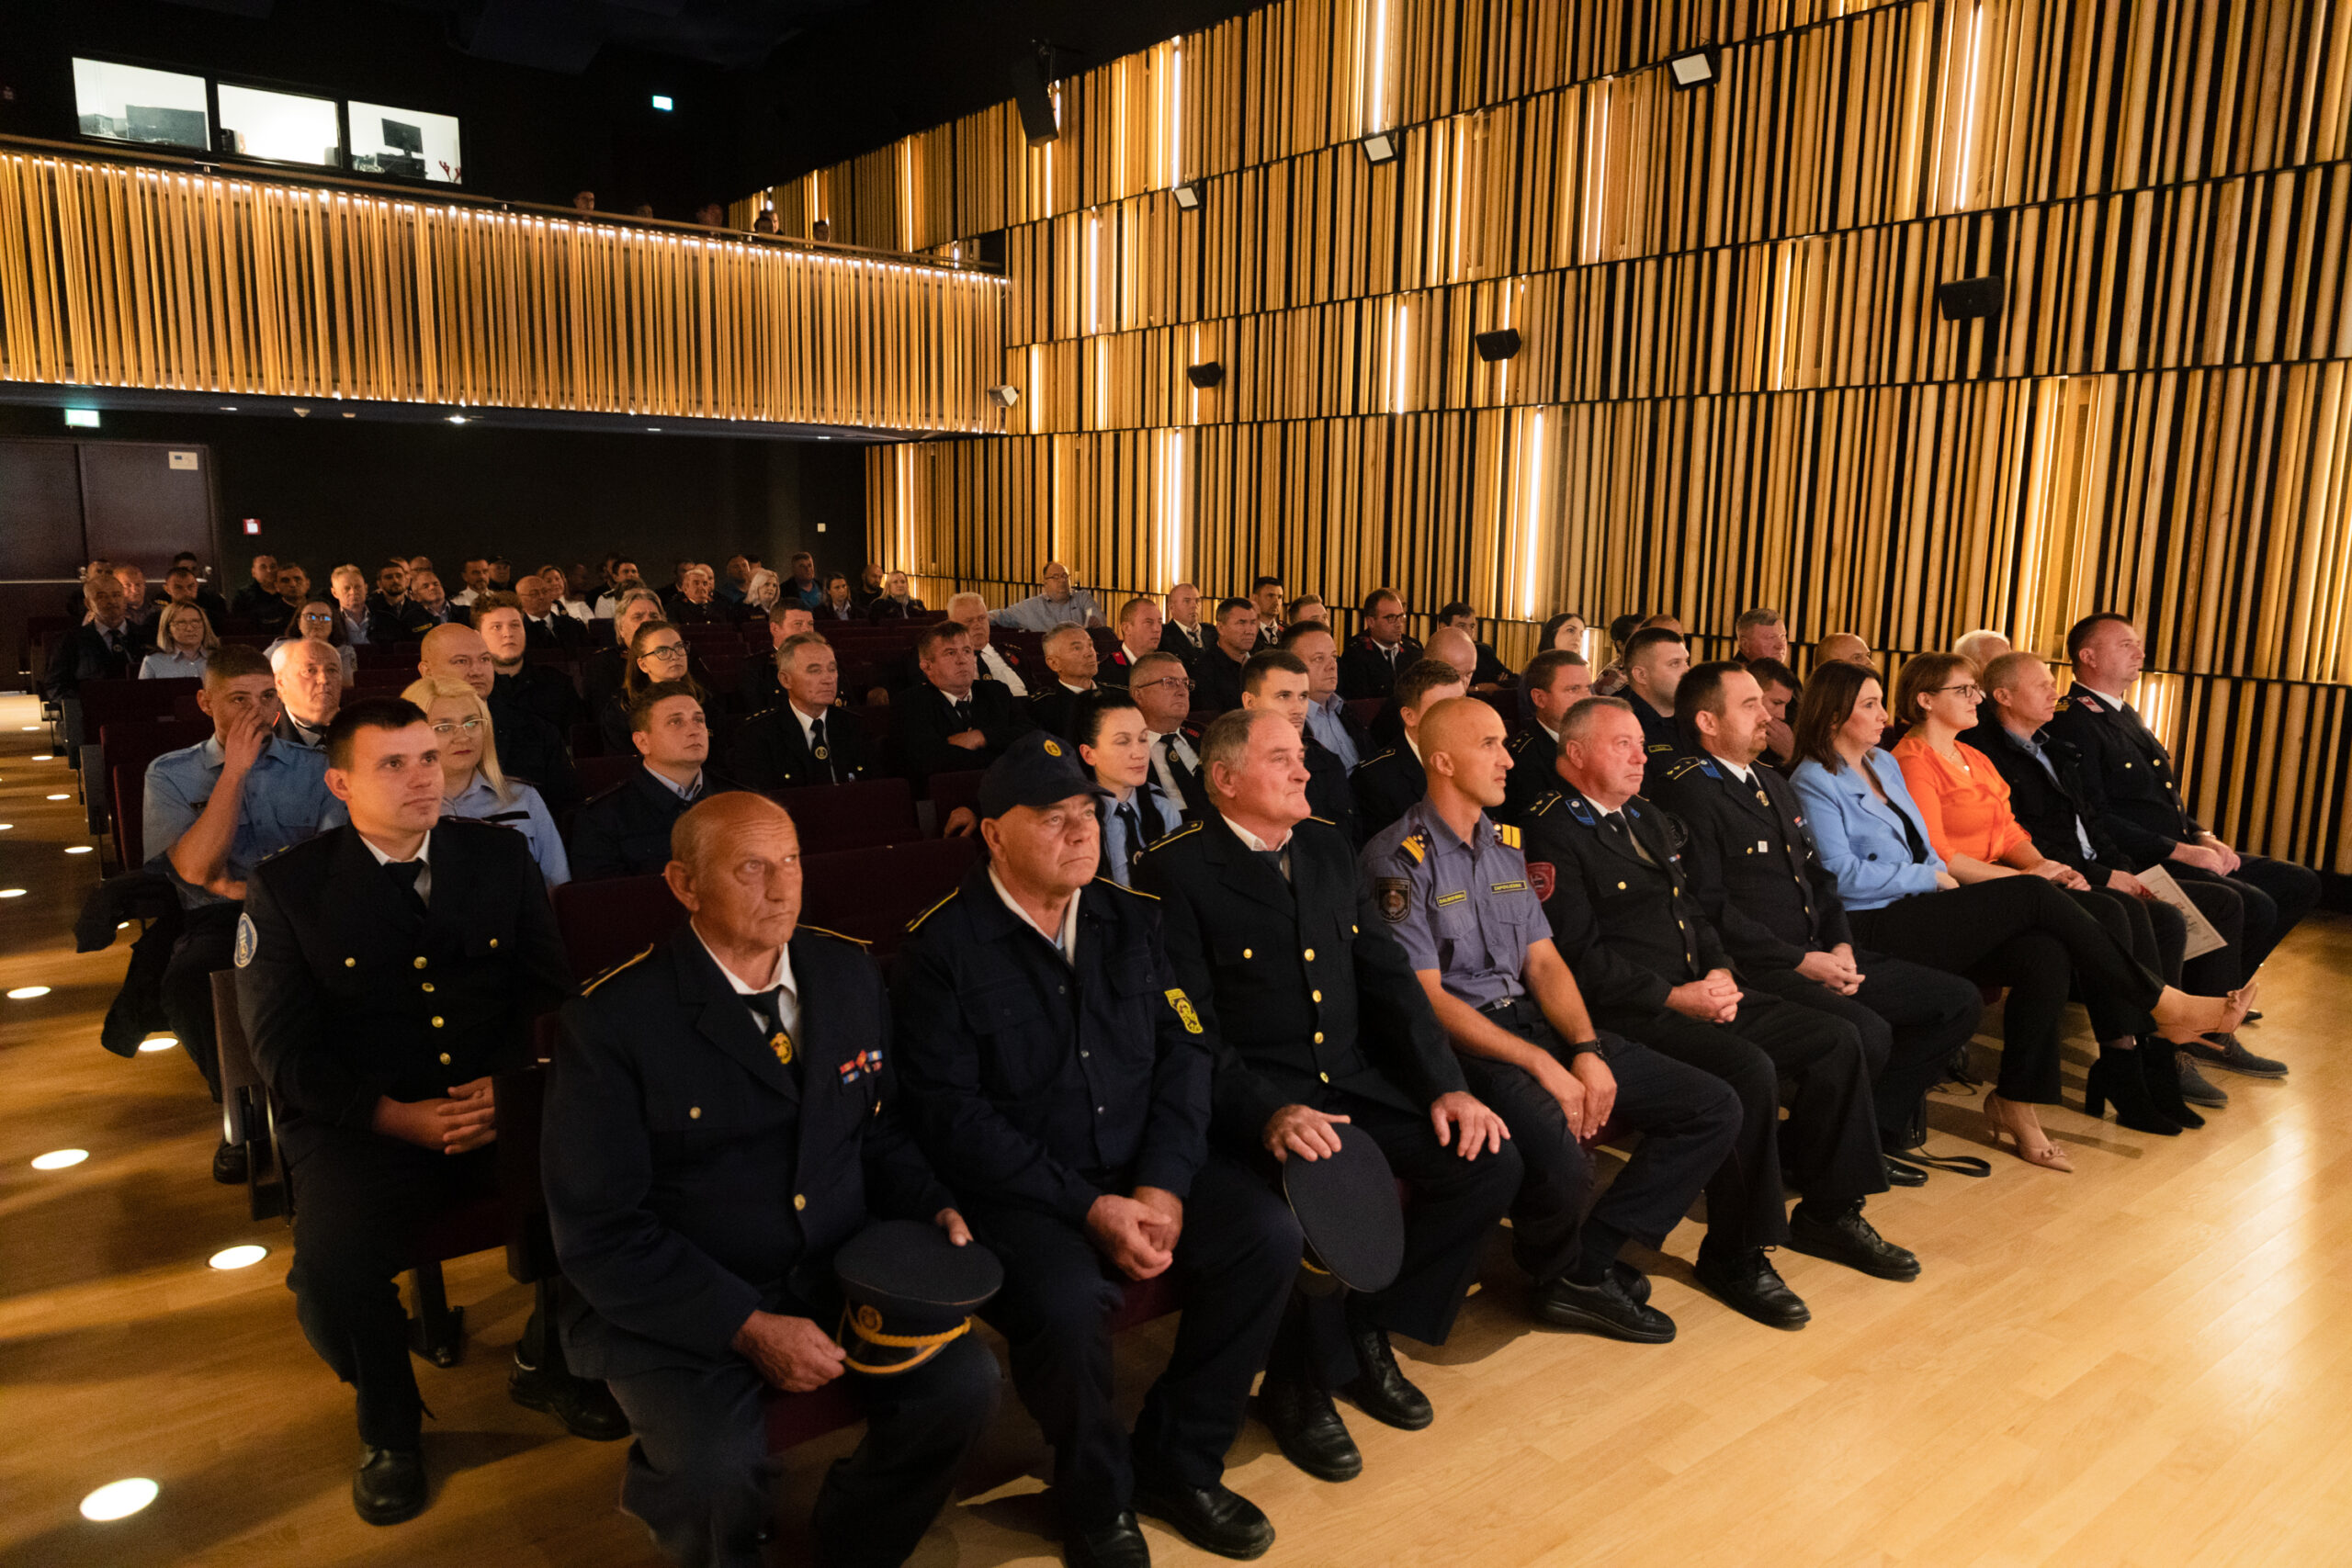 Pleternički vatrogasci proslavili 130 godina postojanja: “Hvala Vam za svaki dan naše sigurnosti”